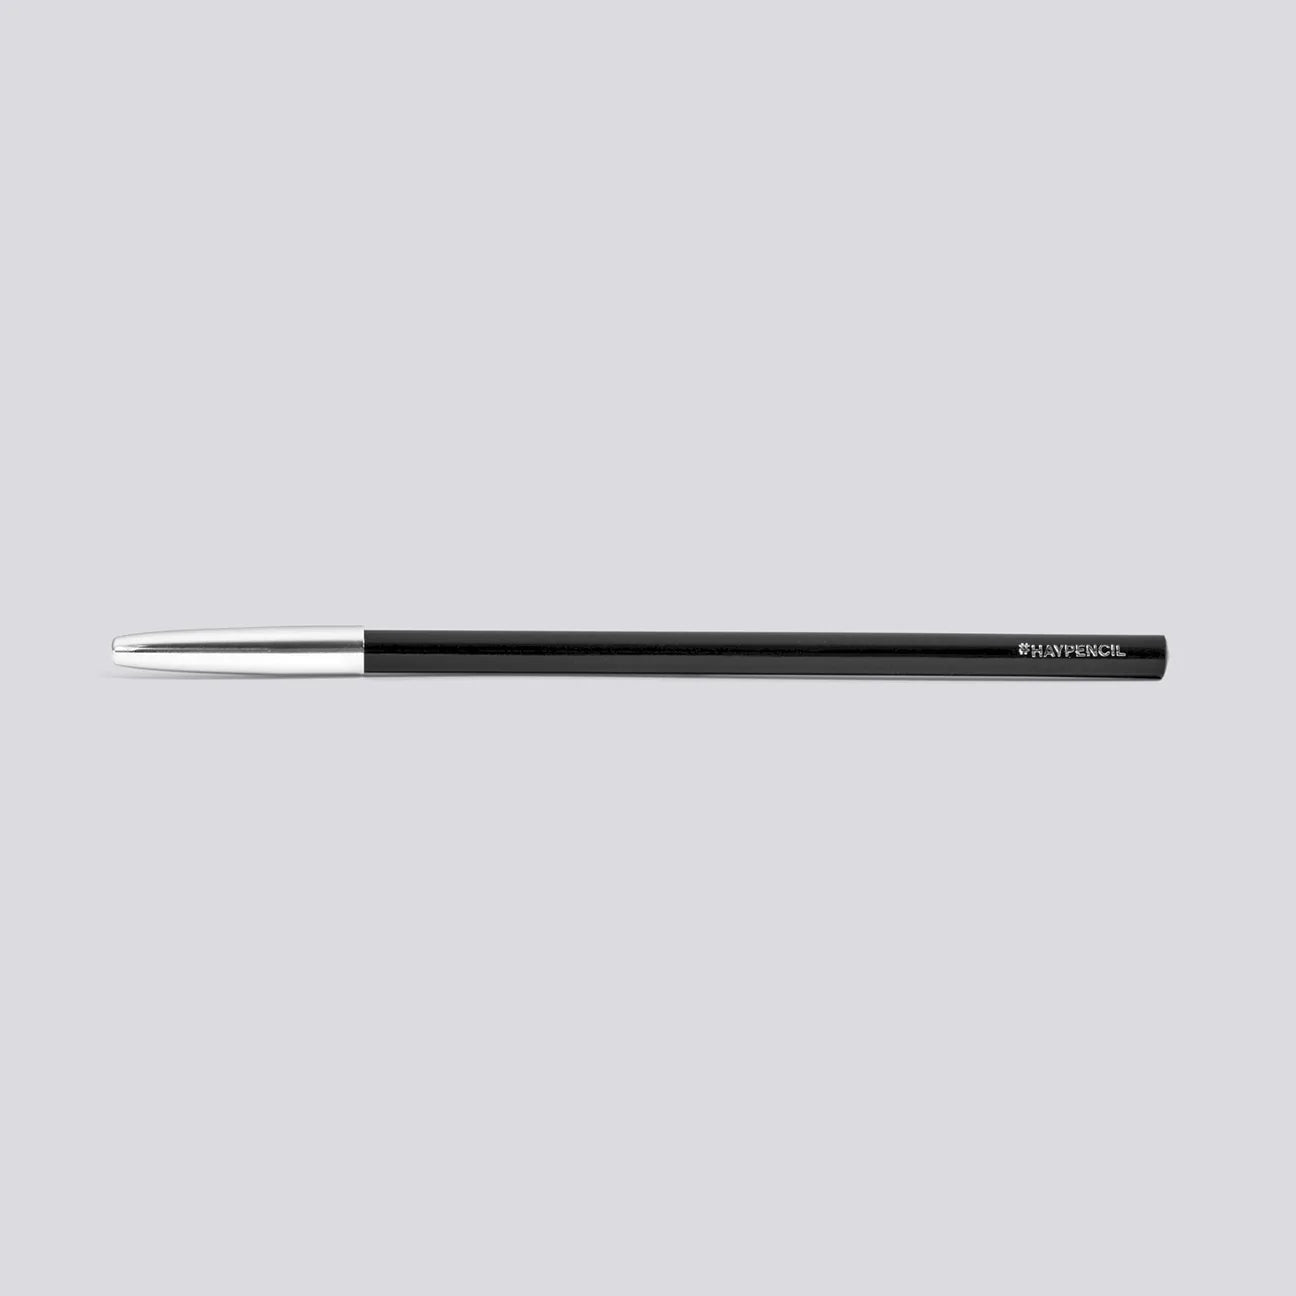 Hay pencil No.4 - Black